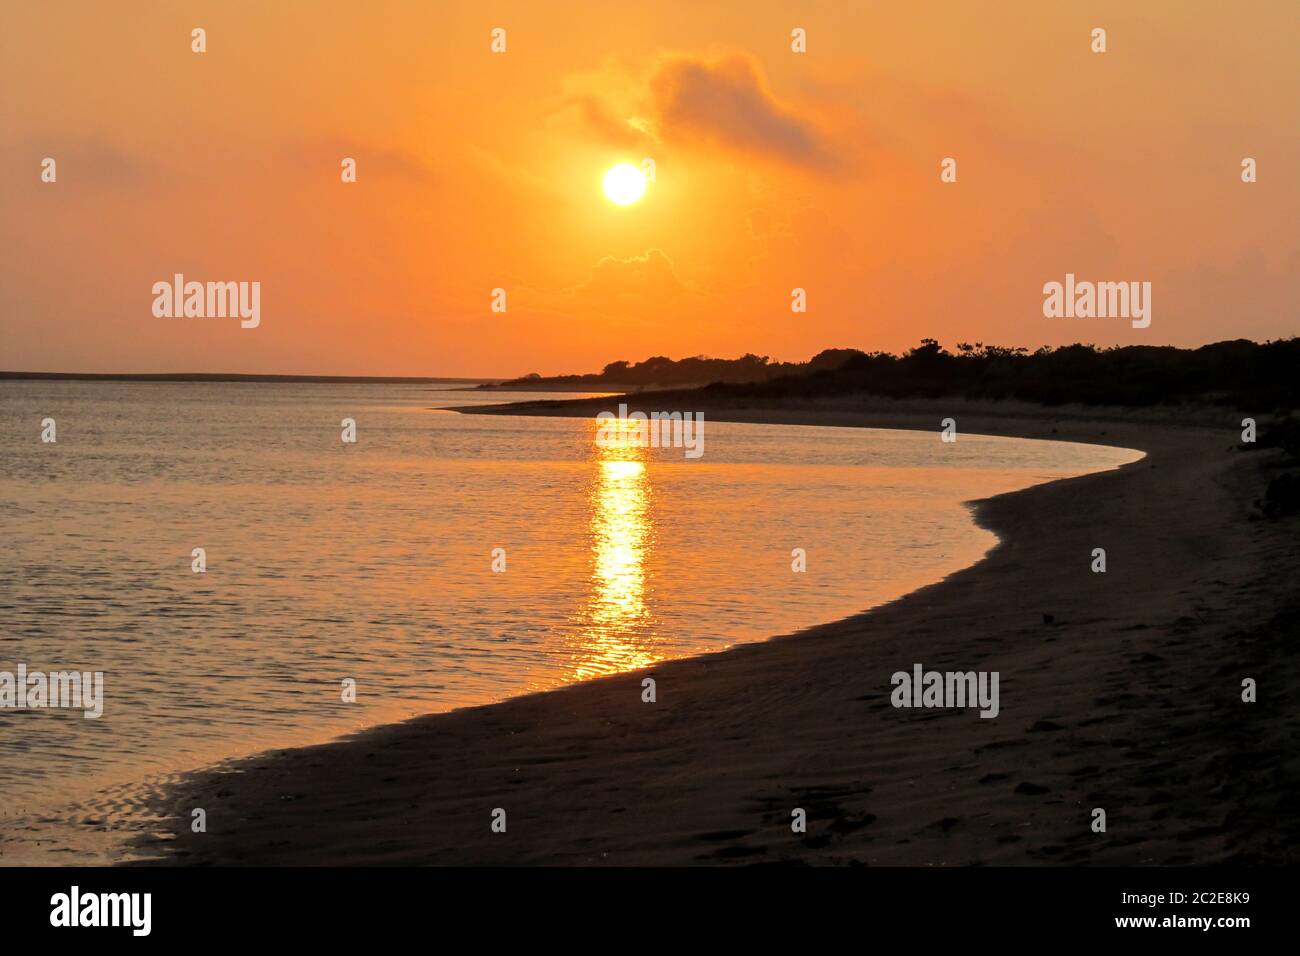 Sonnenaufgang, der sich in einer ruhigen, abgelegenen Bucht auf der portugiesischen Insel widerspiegelt, die Teil des KaNyaka Barrier Island Systems im Süden Mosambiks ist Stockfoto